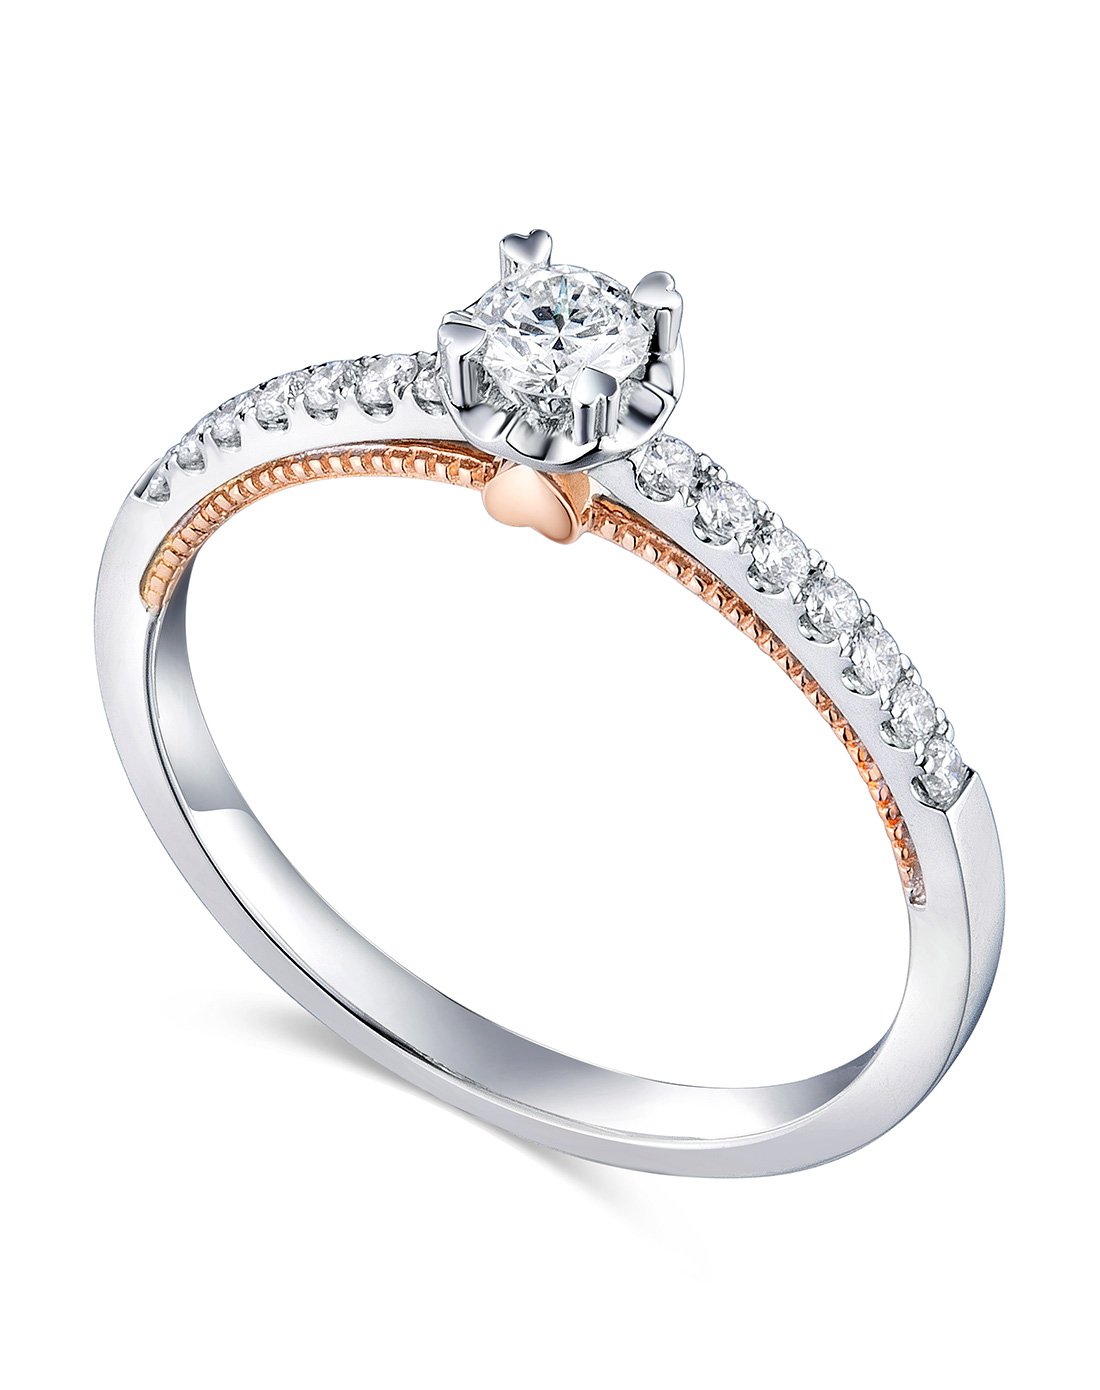 六福珠宝结婚钻石戒指爱很美系列双色婚戒女18k金钻戒正品定价